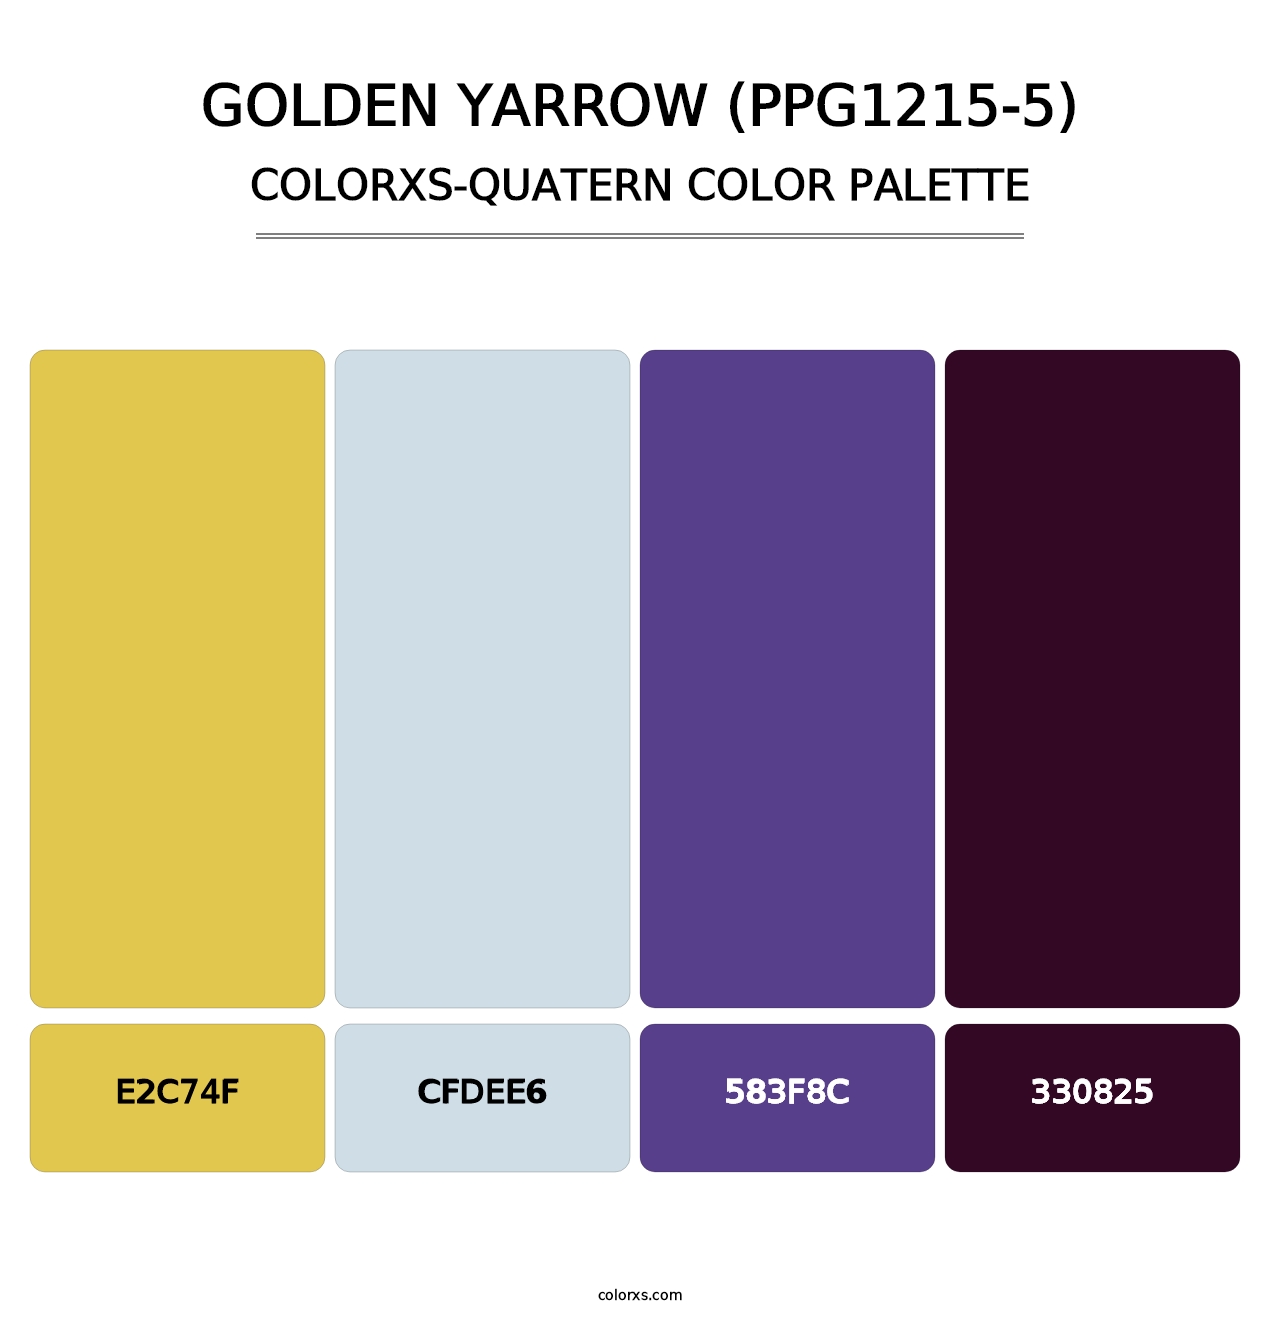 Golden Yarrow (PPG1215-5) - Colorxs Quatern Palette